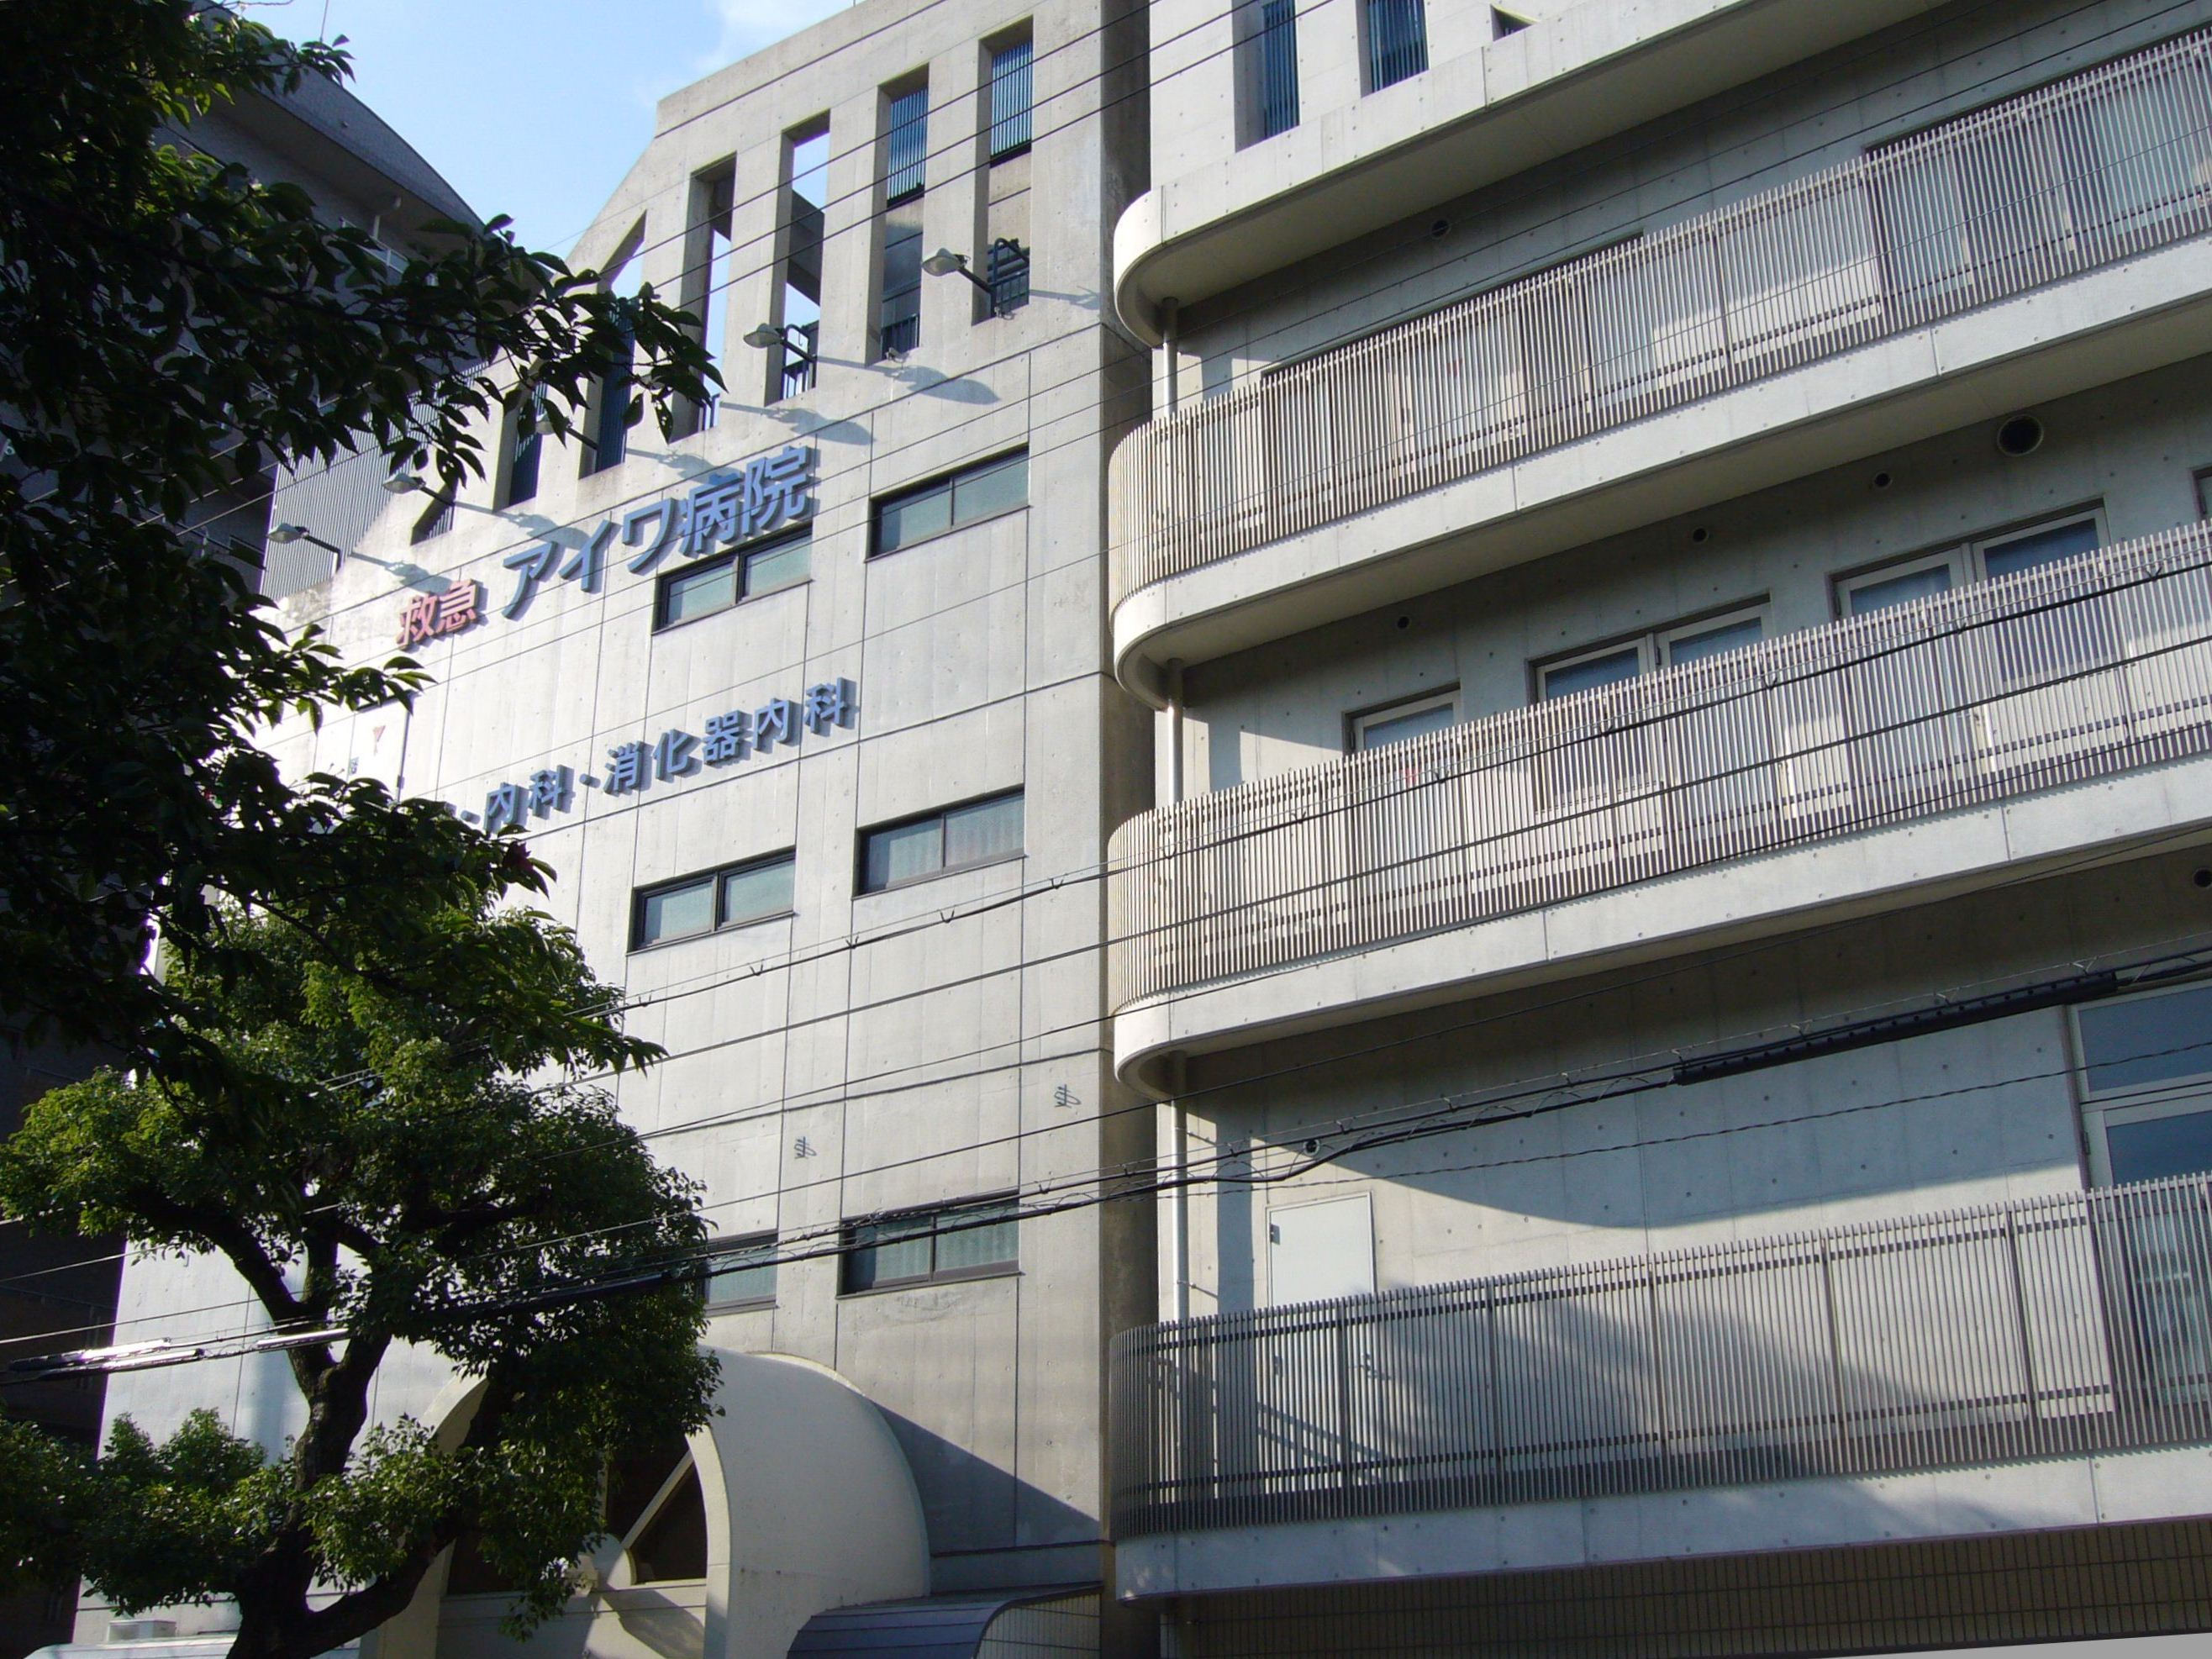 Hospital. 59m to Aiwa Hospital (Hospital)